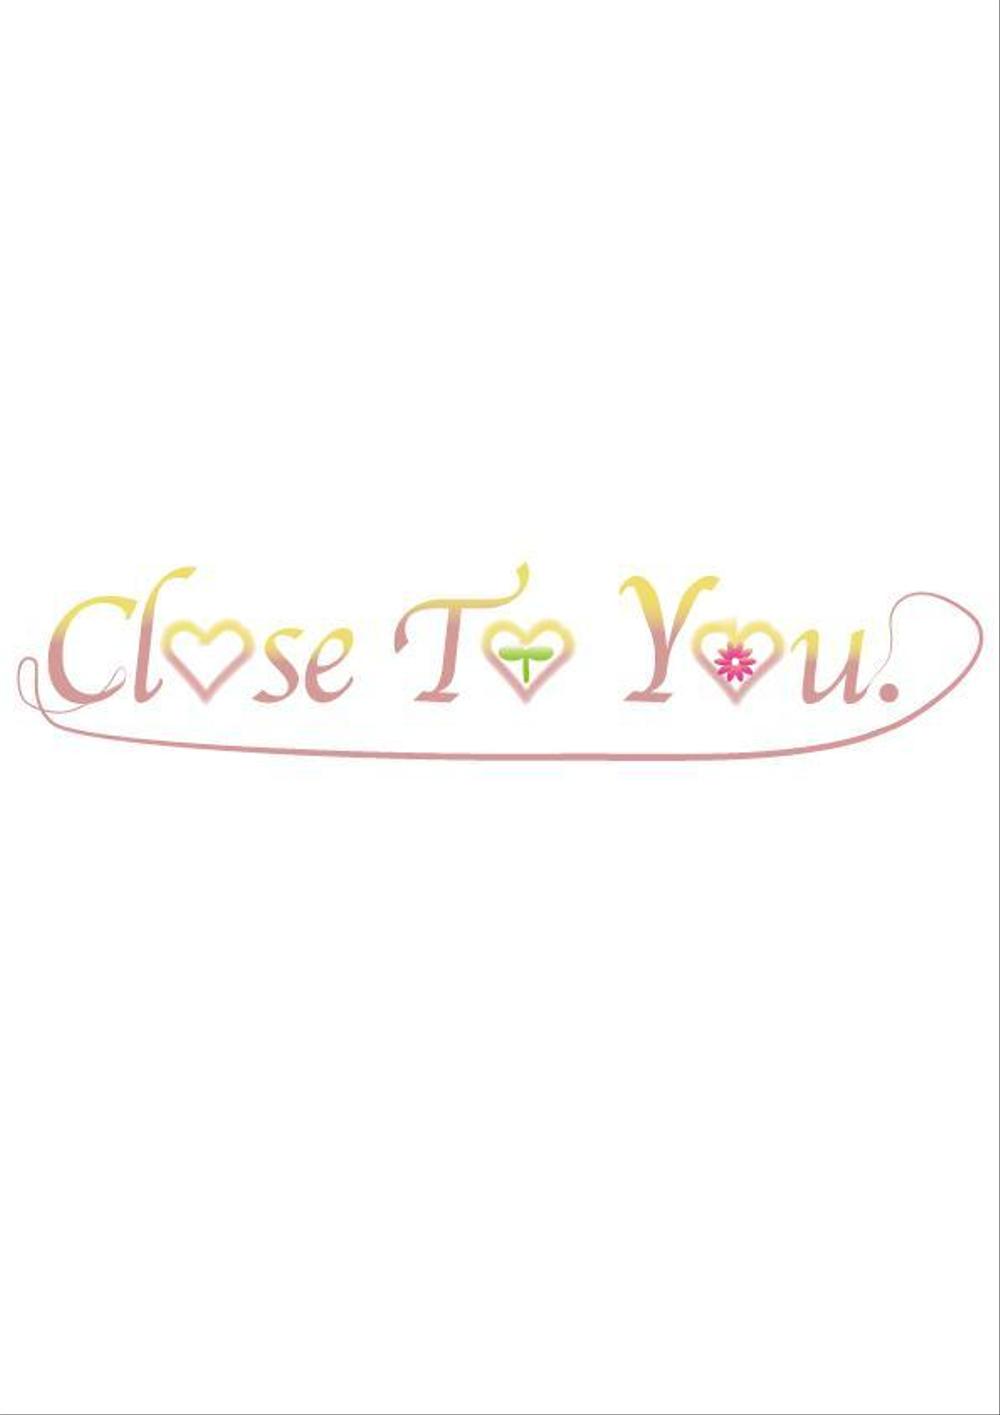 オンラインカウンセリング「Close To You.」のロゴの作成